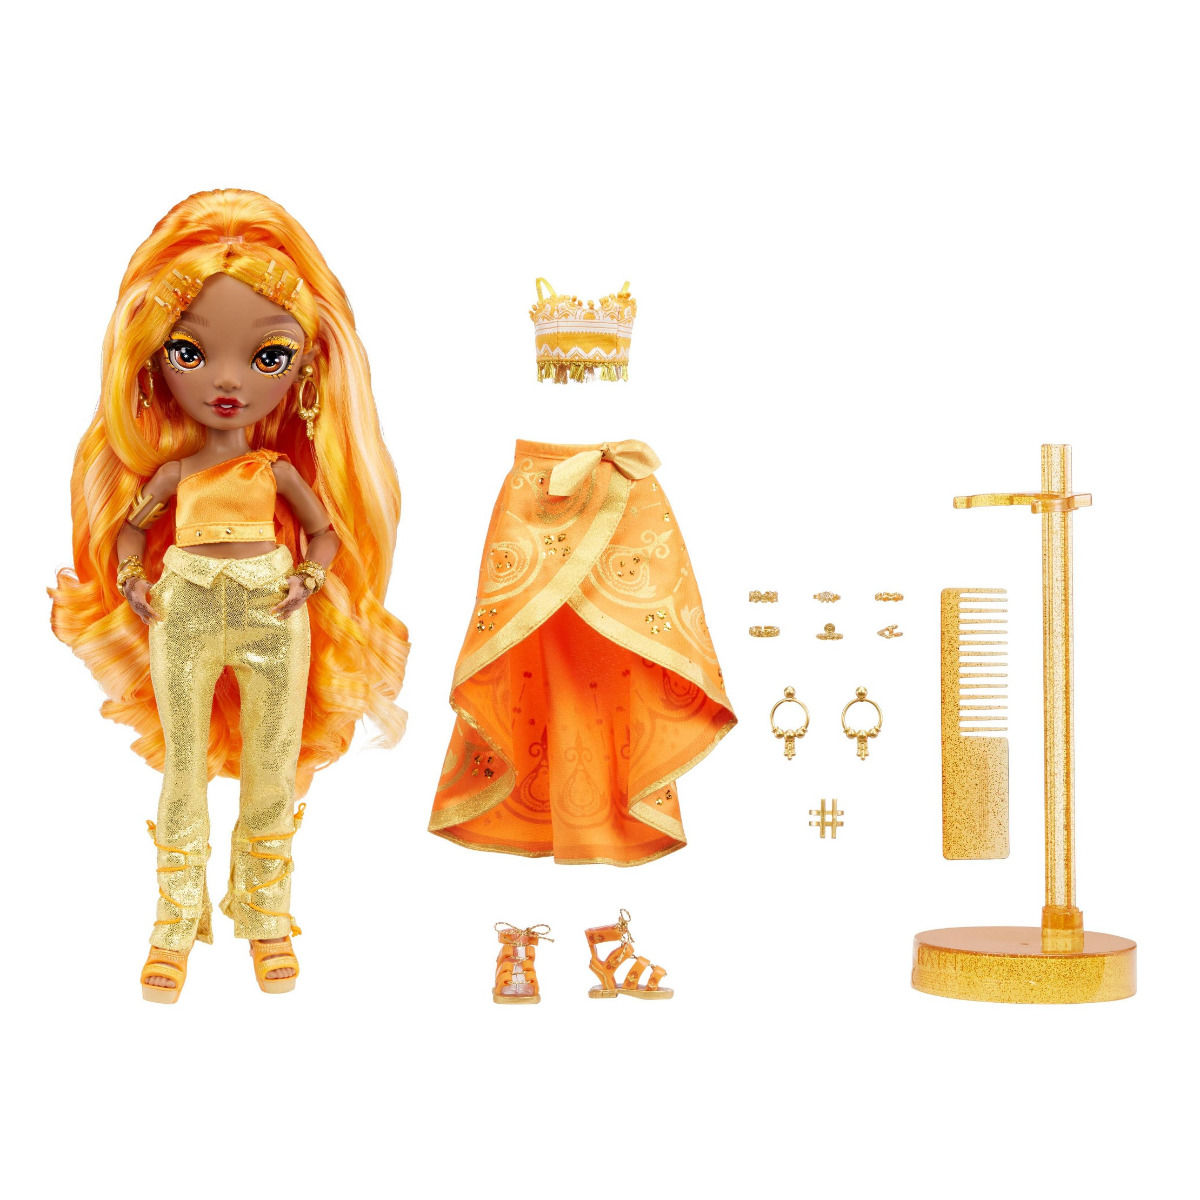 Modepuppe Rainbow High 2 Outfits zum Kombinieren Puppen-Accessoires Toys B-WARE 